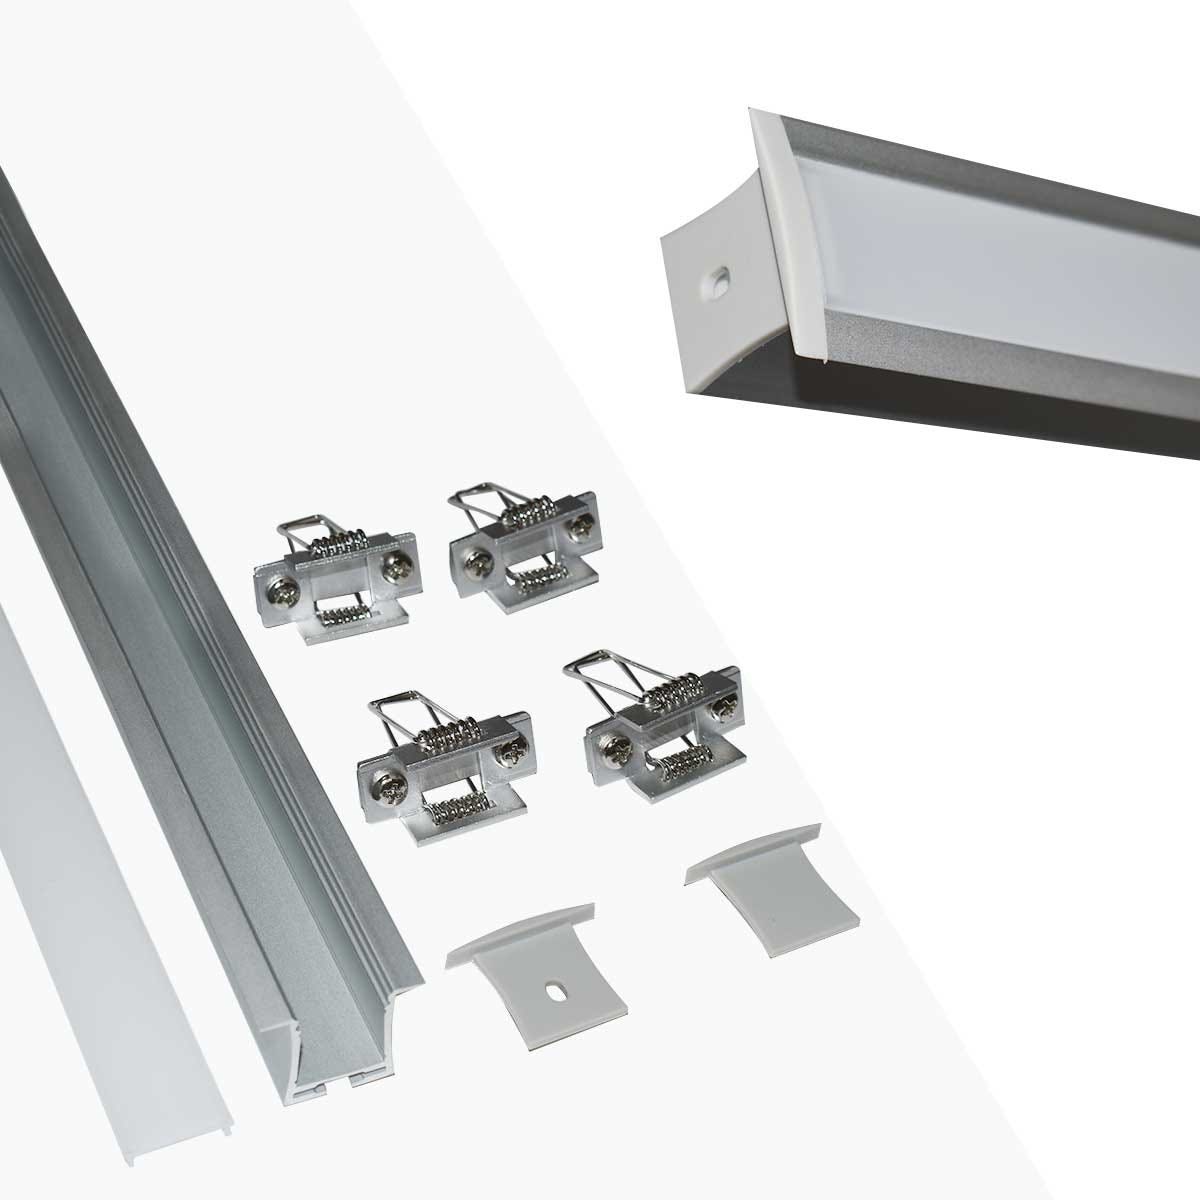 Perfil de aluminio empotrable para tira LED con difusor- 4 clips - 2 tapas  - 36x28mm - 2 metros